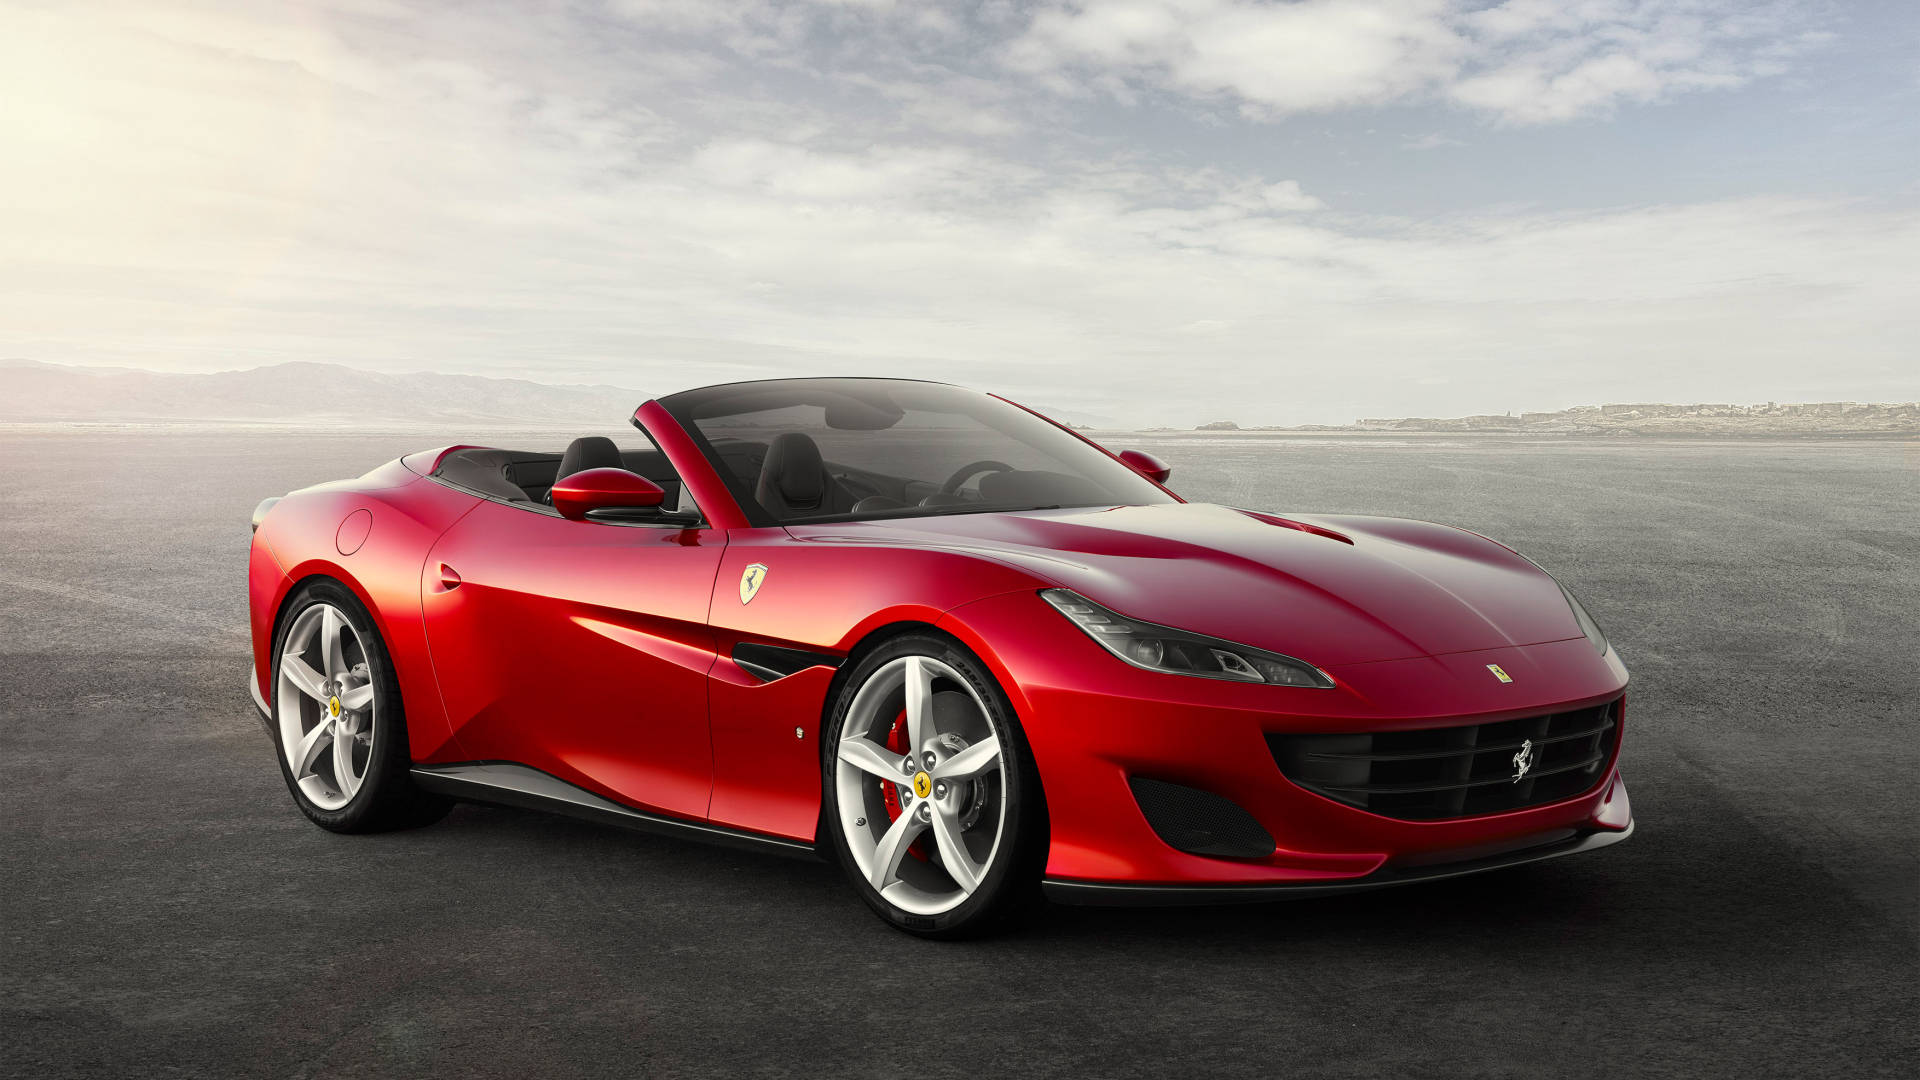 Hyperhastighetkörning - Se Ferrarin I Full Fart! Wallpaper